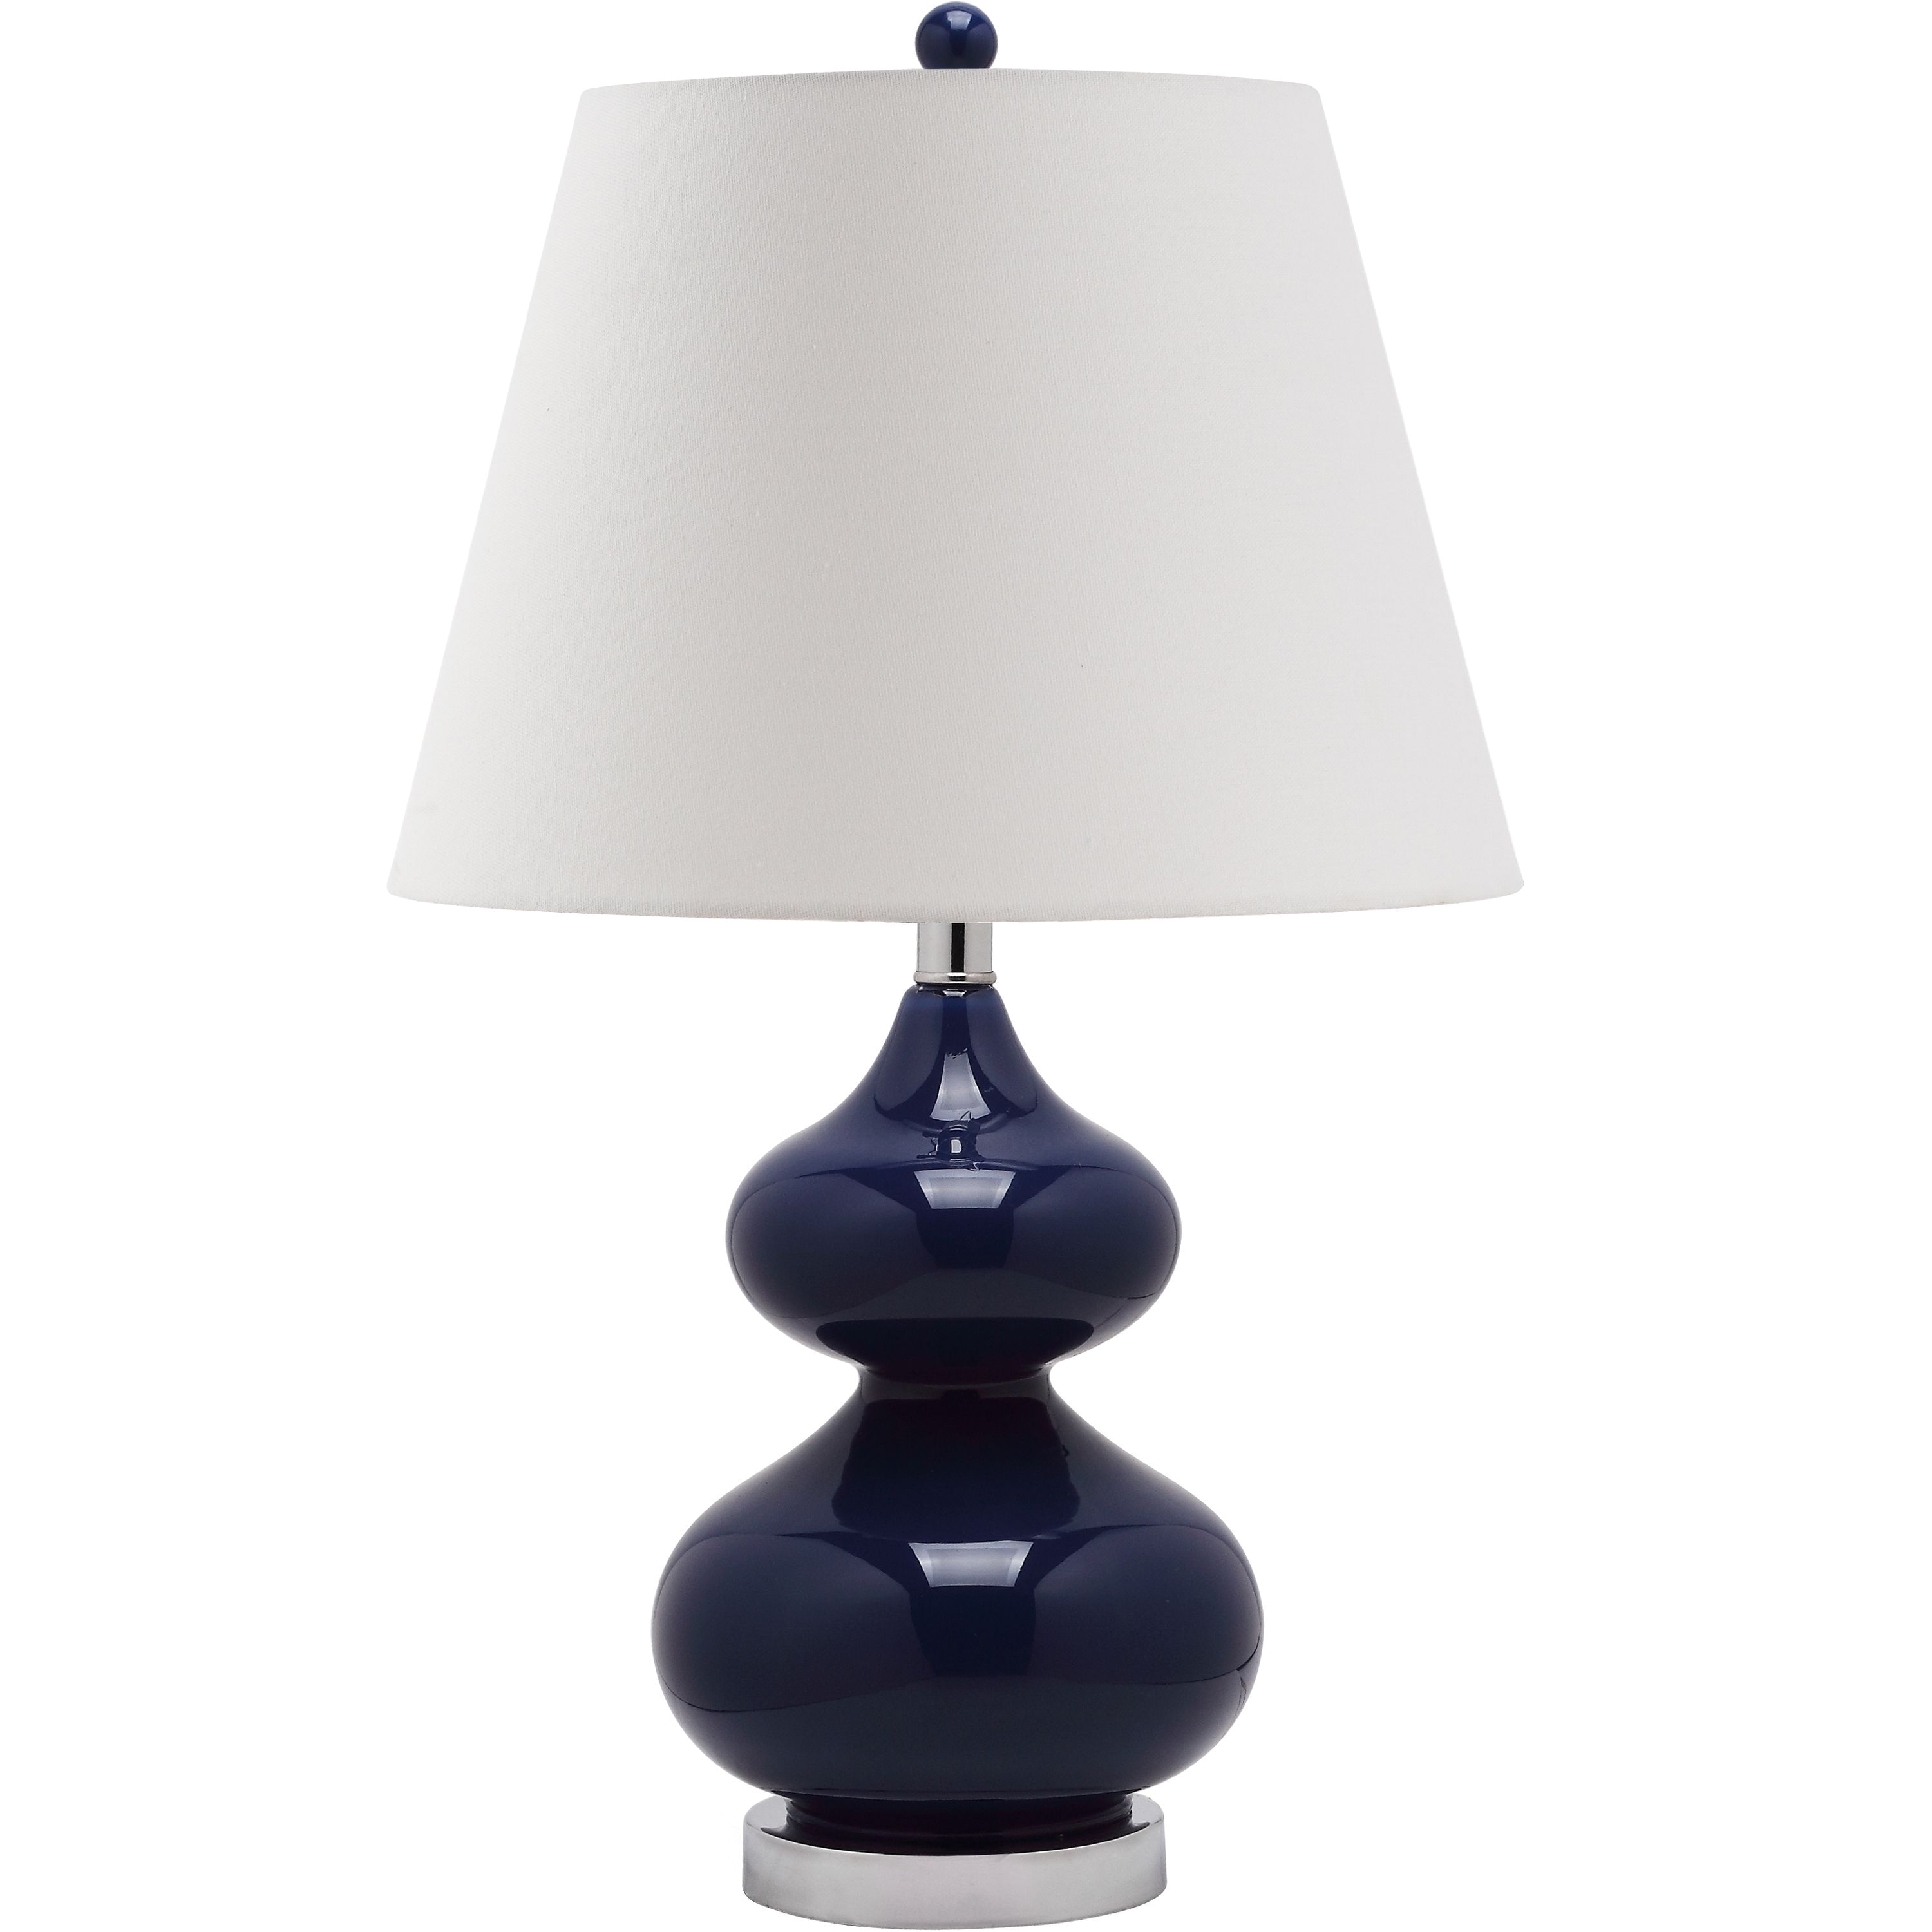 Living room lighting · Safavieh Lighting 24 inch Eva Navy Double Gourd Glass Table Lamp LITS4086B